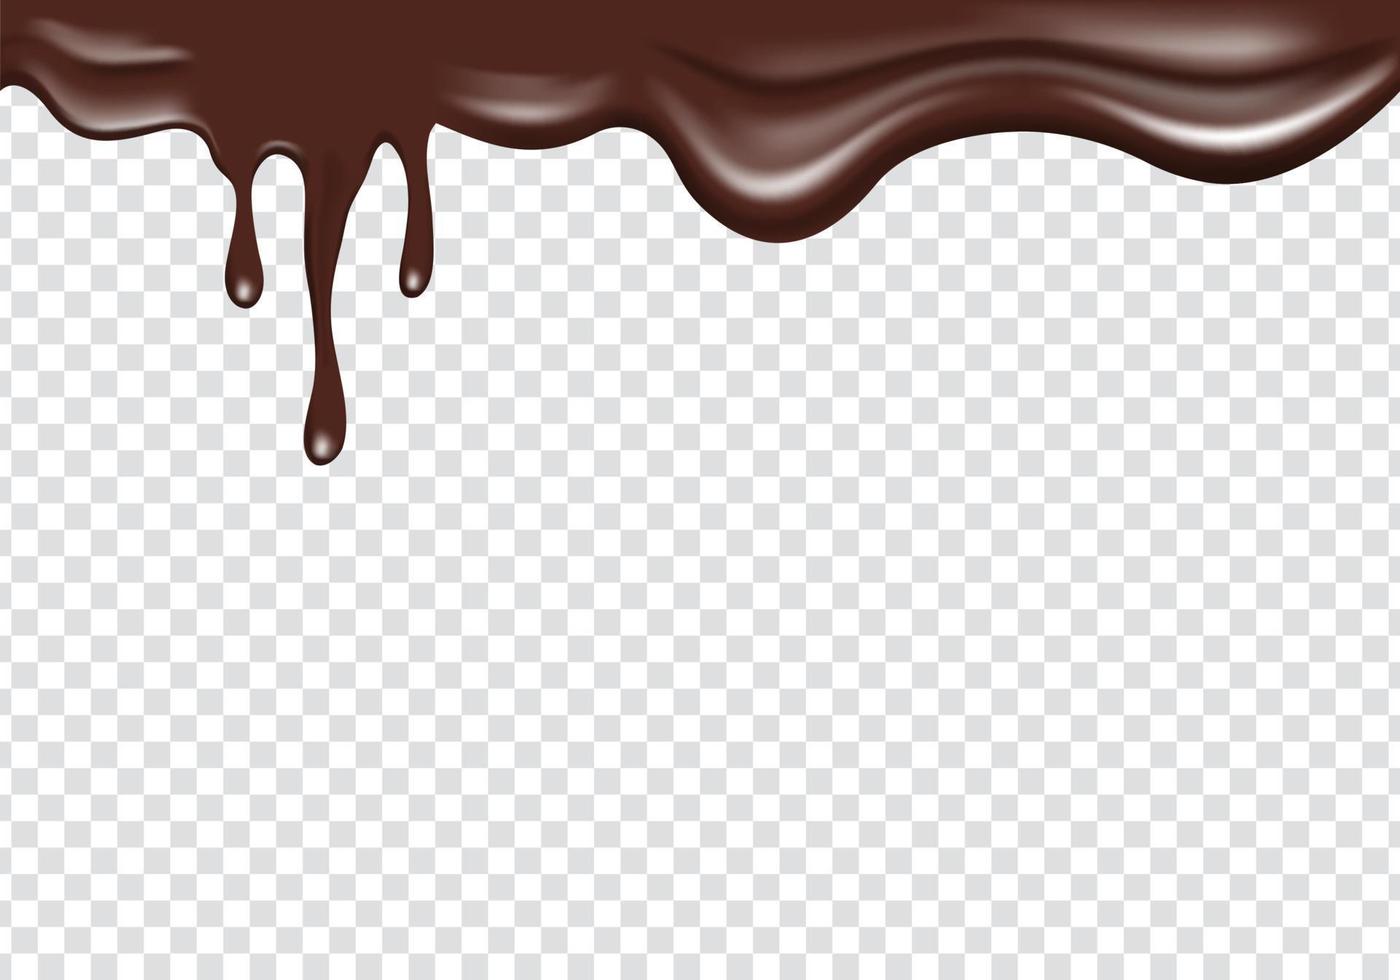 liquide de chocolat réaliste qui s'écoule de la bordure supérieure. cadre de bordure supérieure décoration de gouttes de fusion de chocolat vecteur